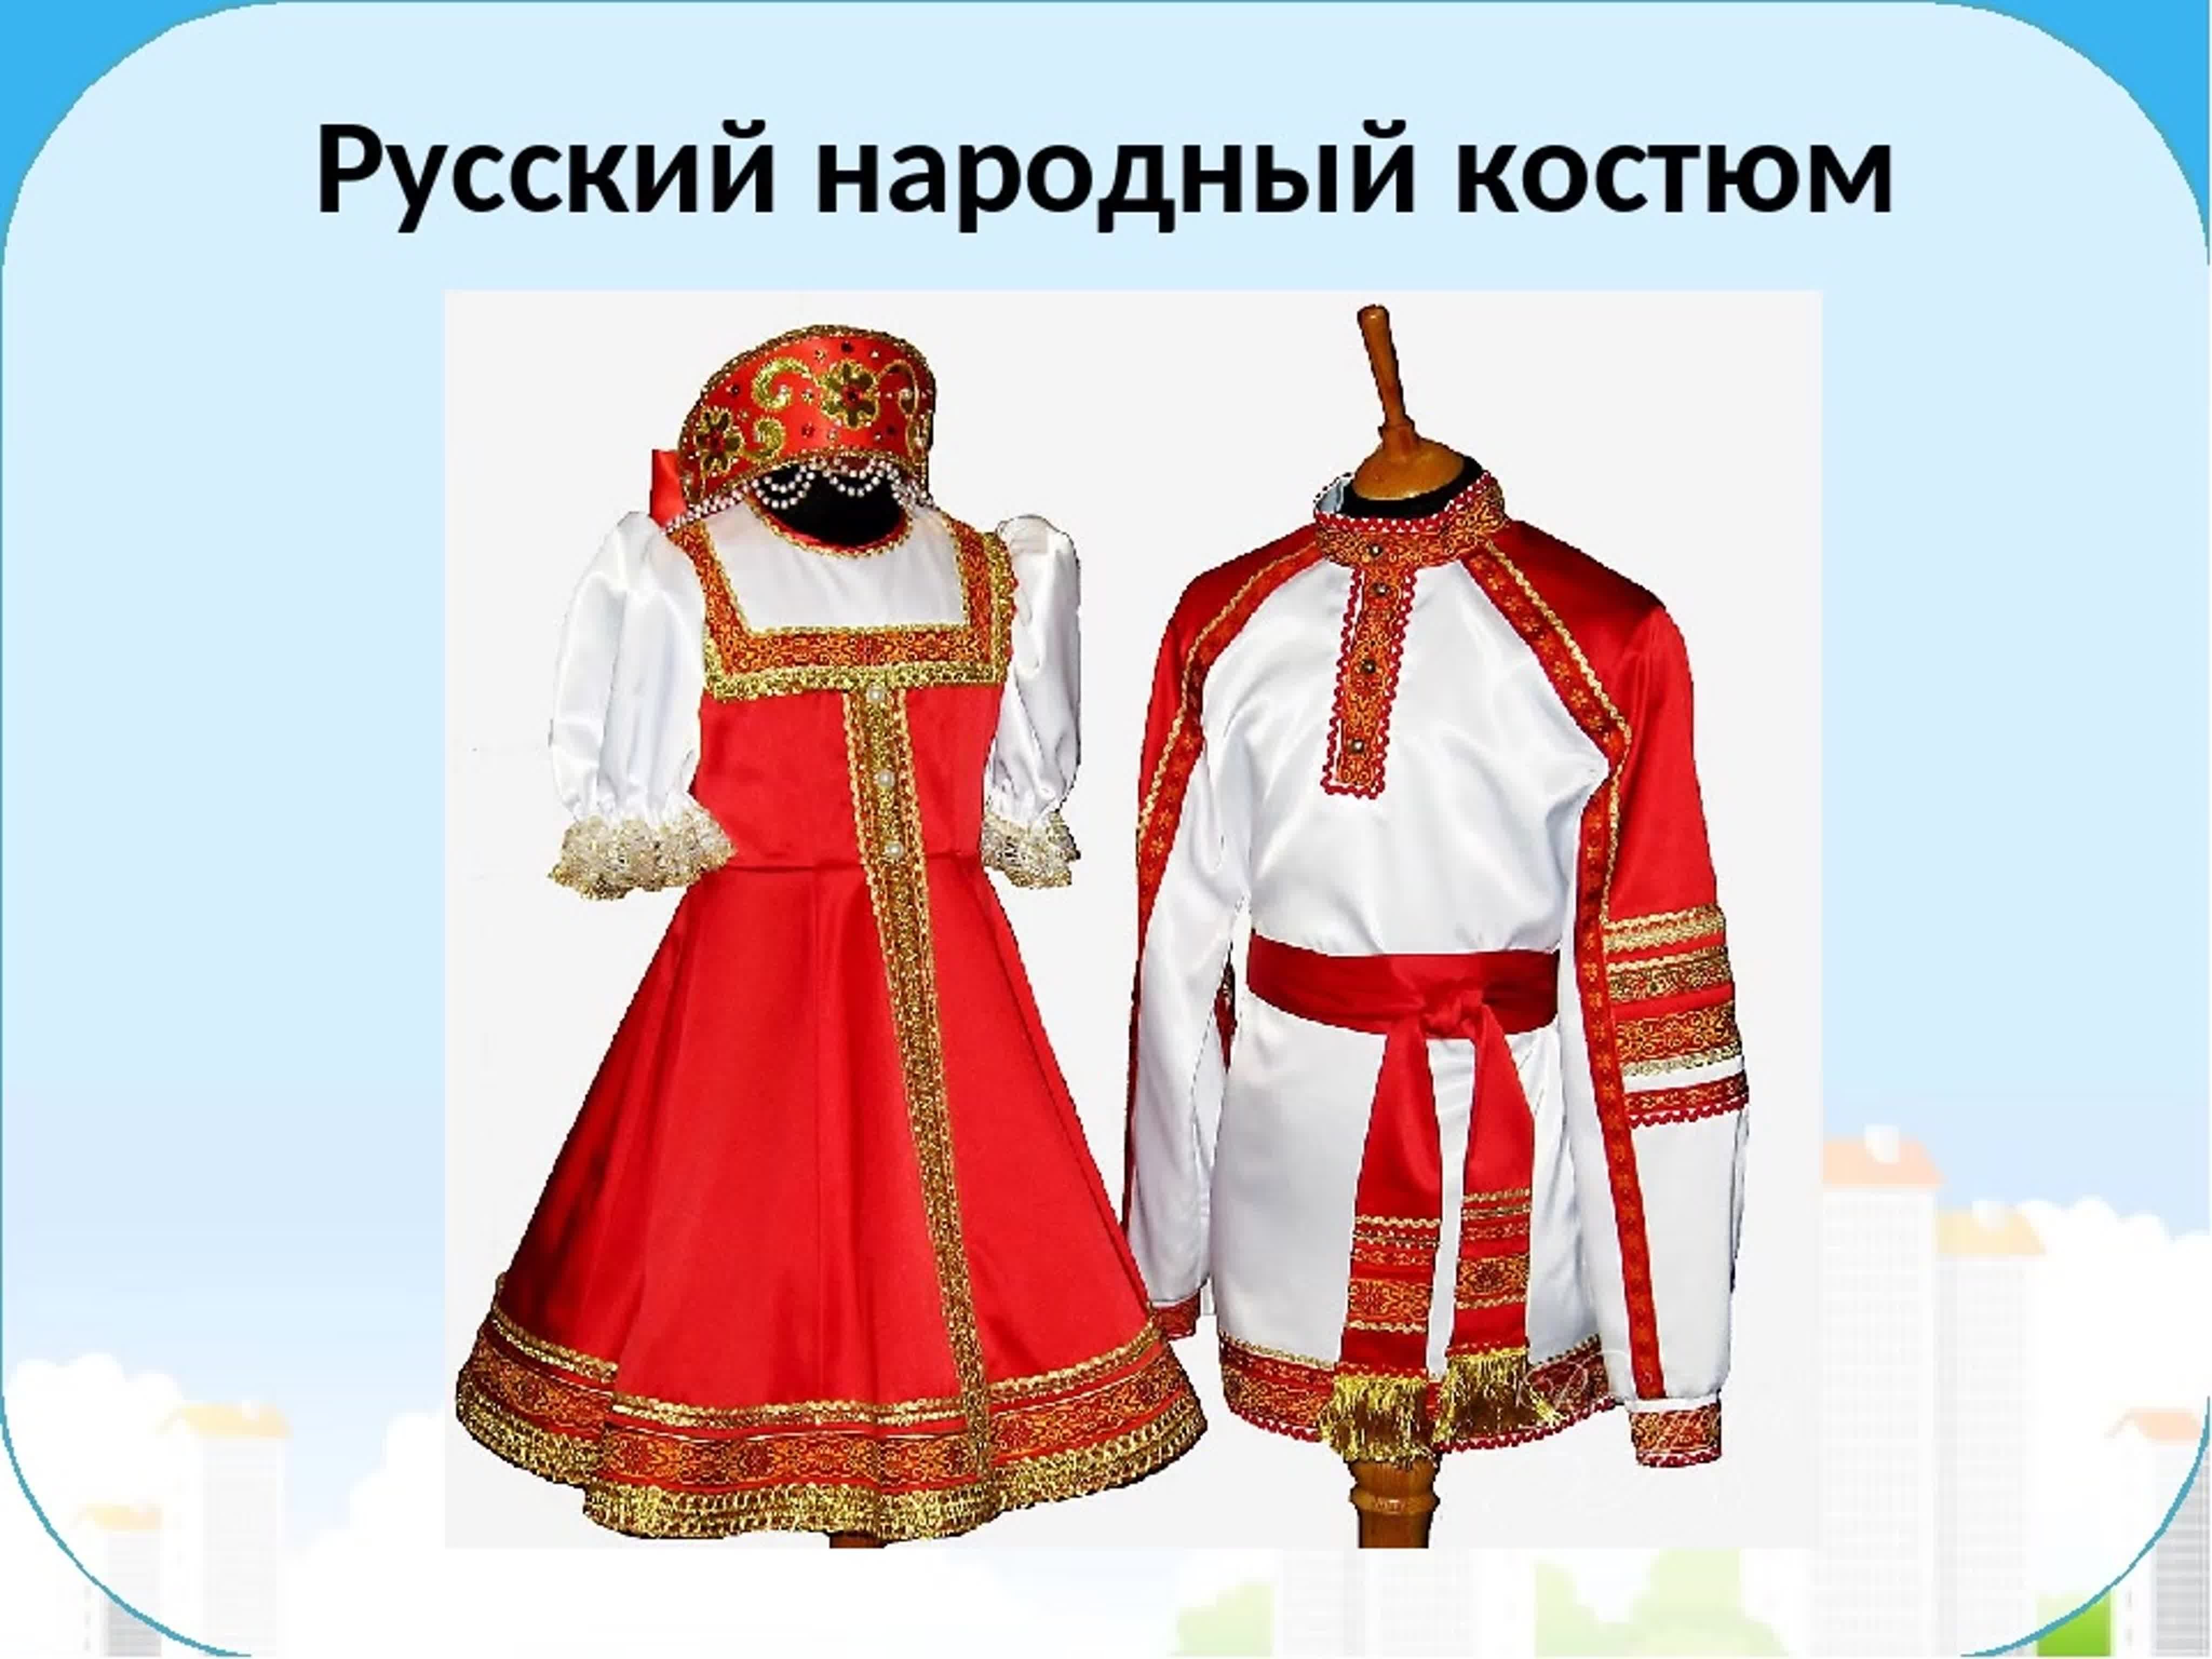 Народный костюм русского народа